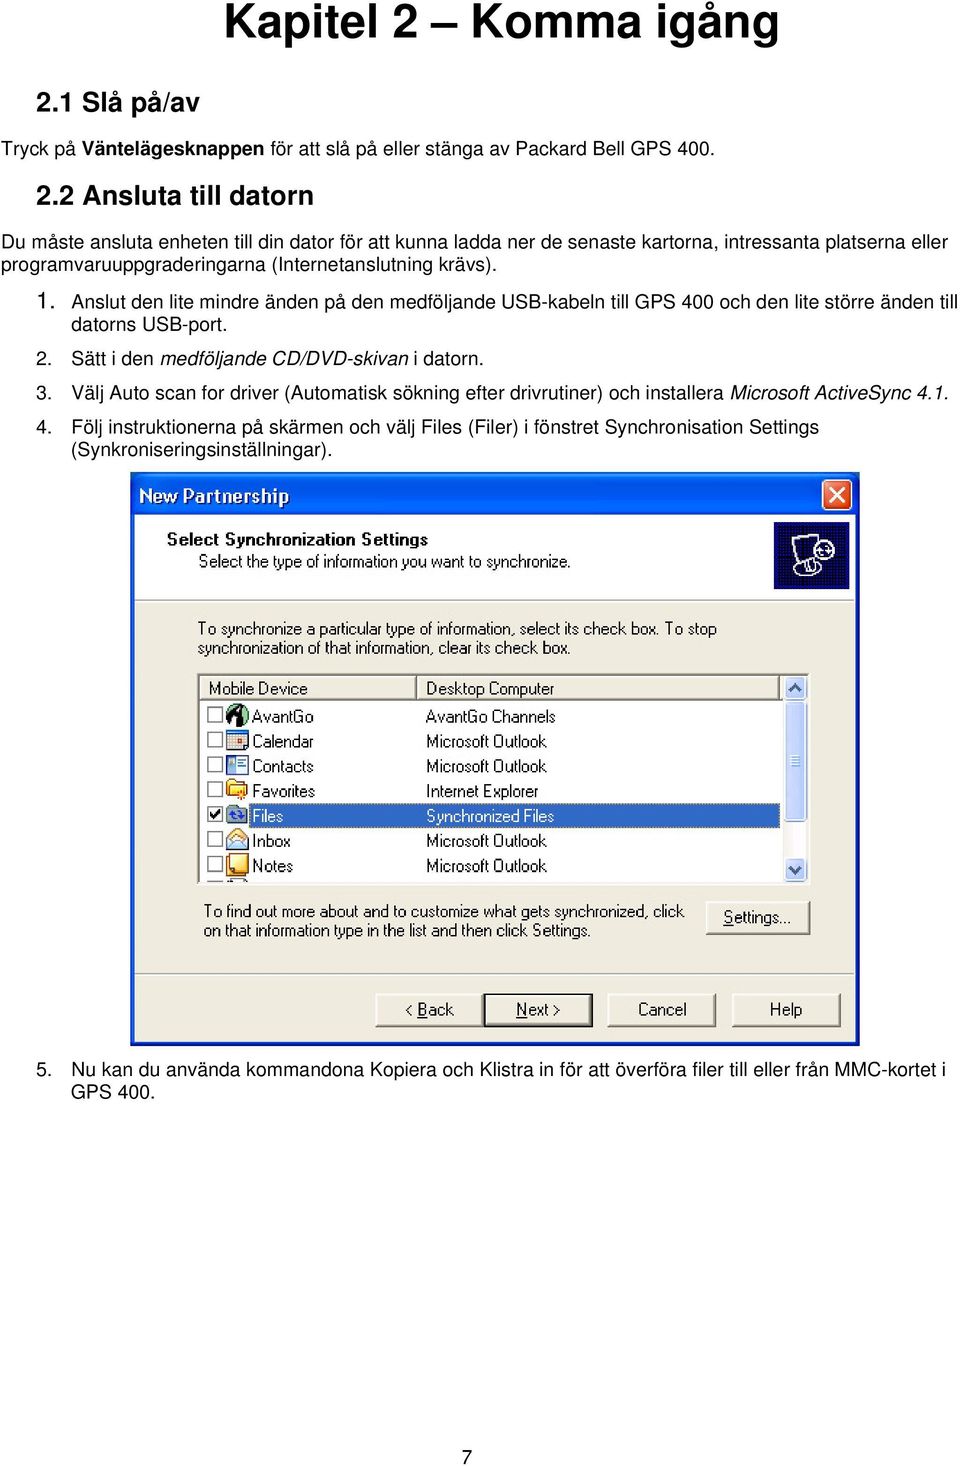 Välj Auto scan for driver (Automatisk sökning efter drivrutiner) och installera Microsoft ActiveSync 4.